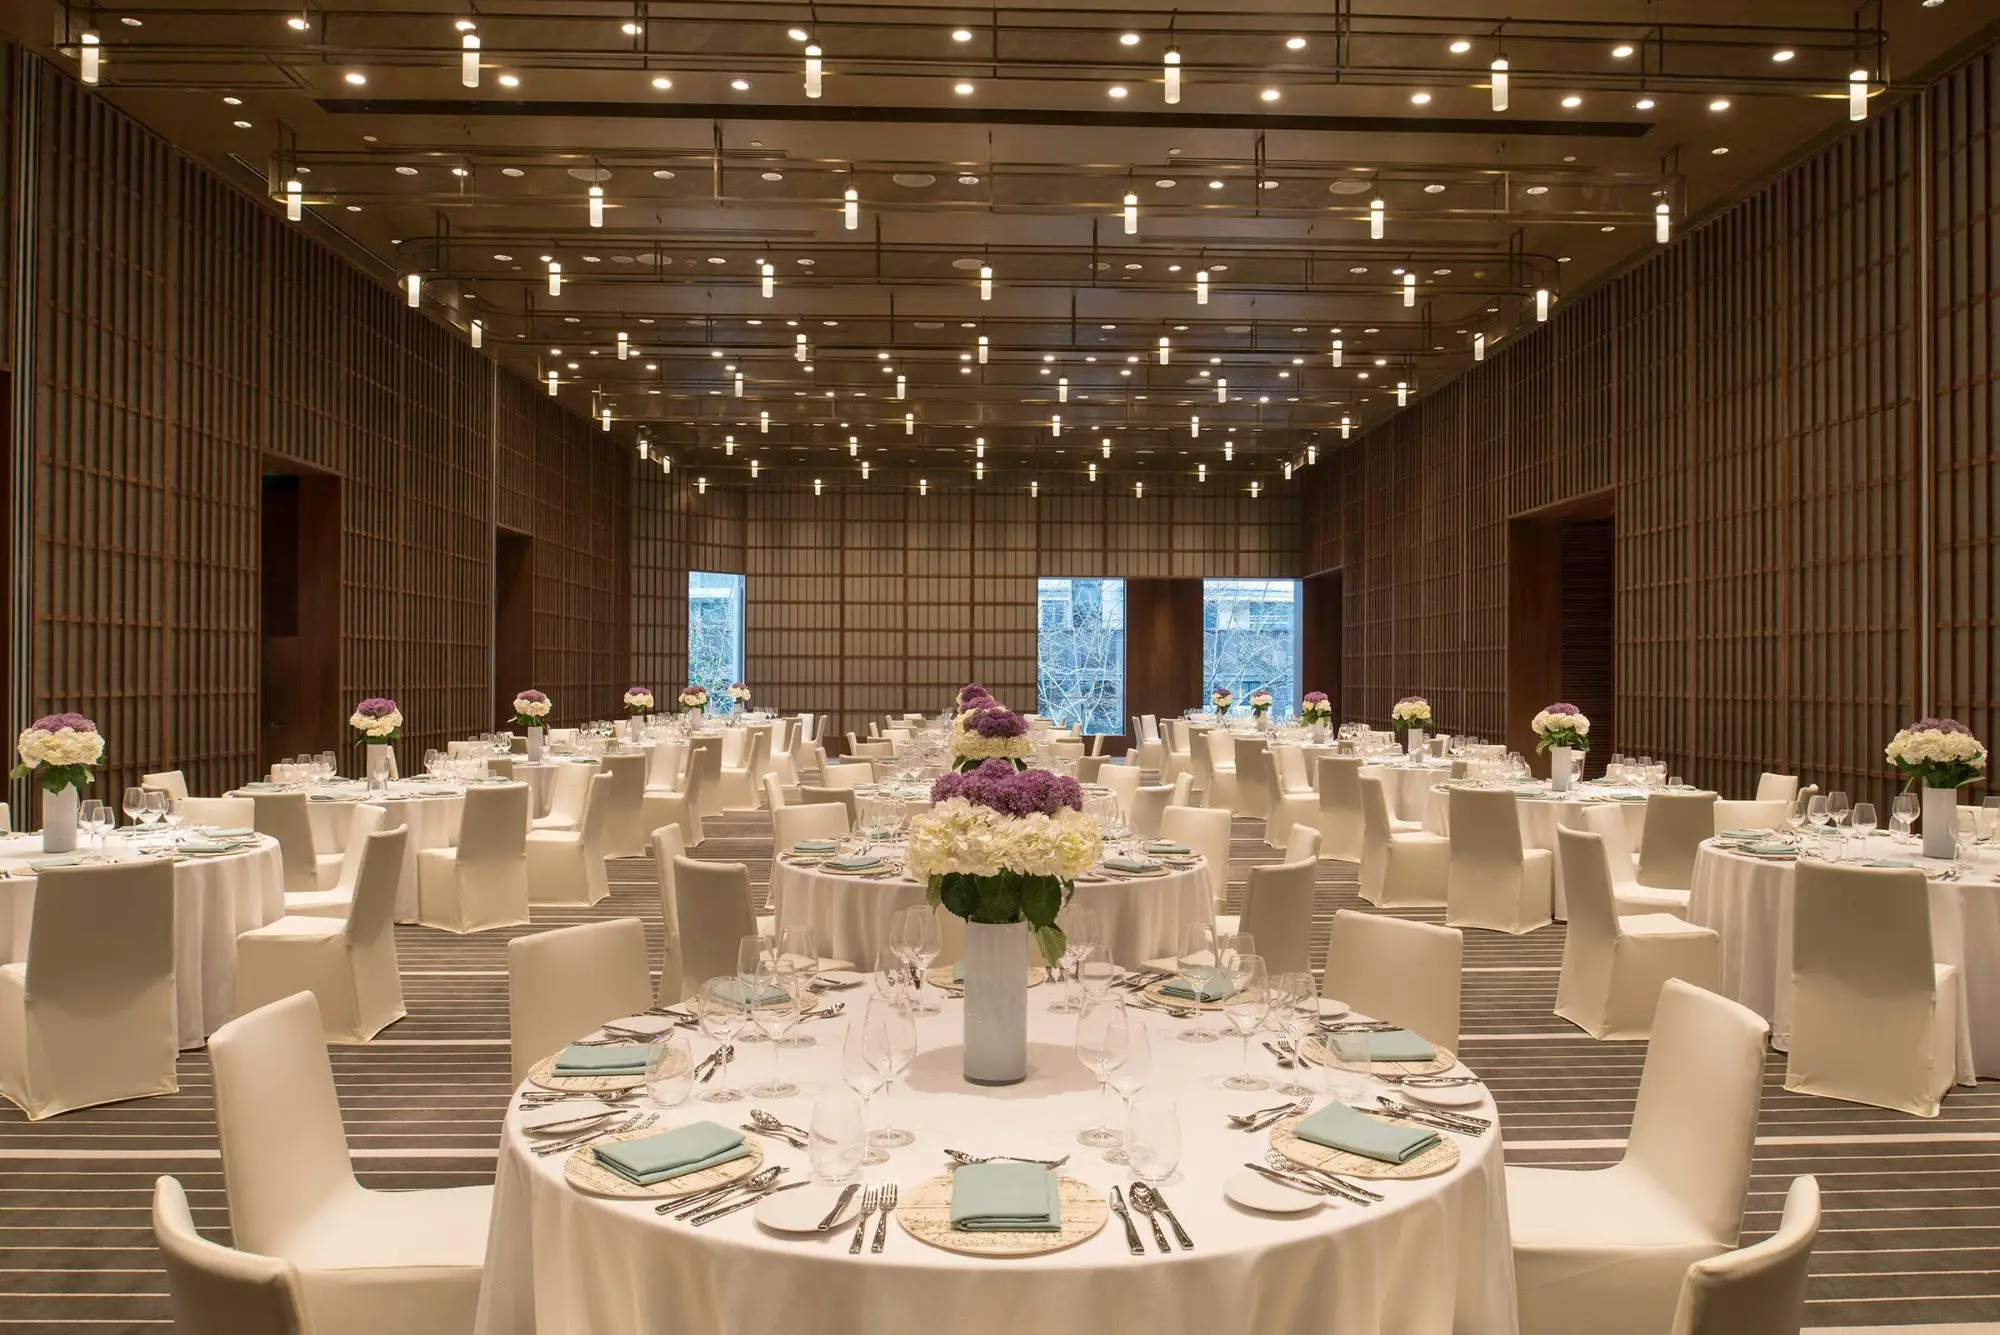 5 bintang putih dan emas Tiffany Tifanny Chiavari Banquet DIN Chivari ruang pernikahan kursi untuk Pesta Hotel Pertemuan acara konferensi